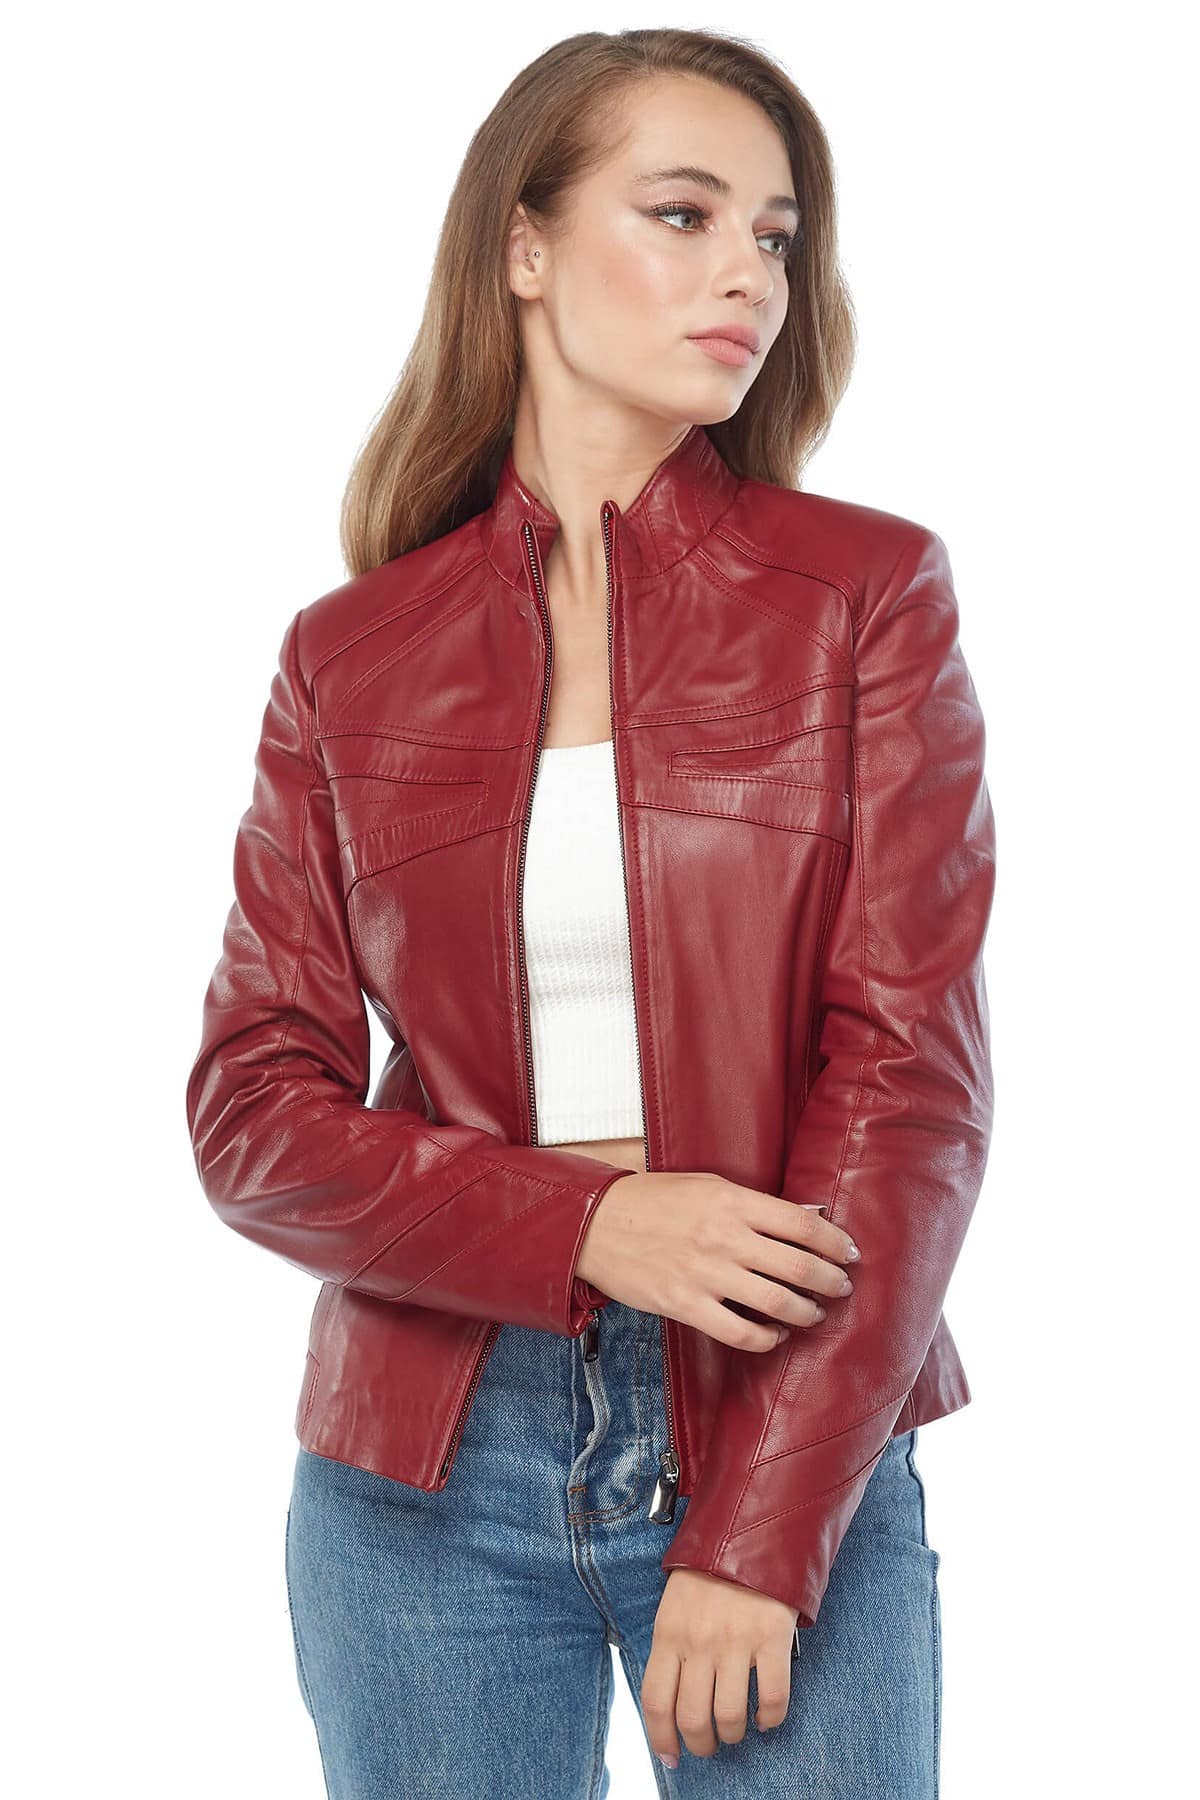 Karen Gillan Women's 100 % Real Red Leather Jacket